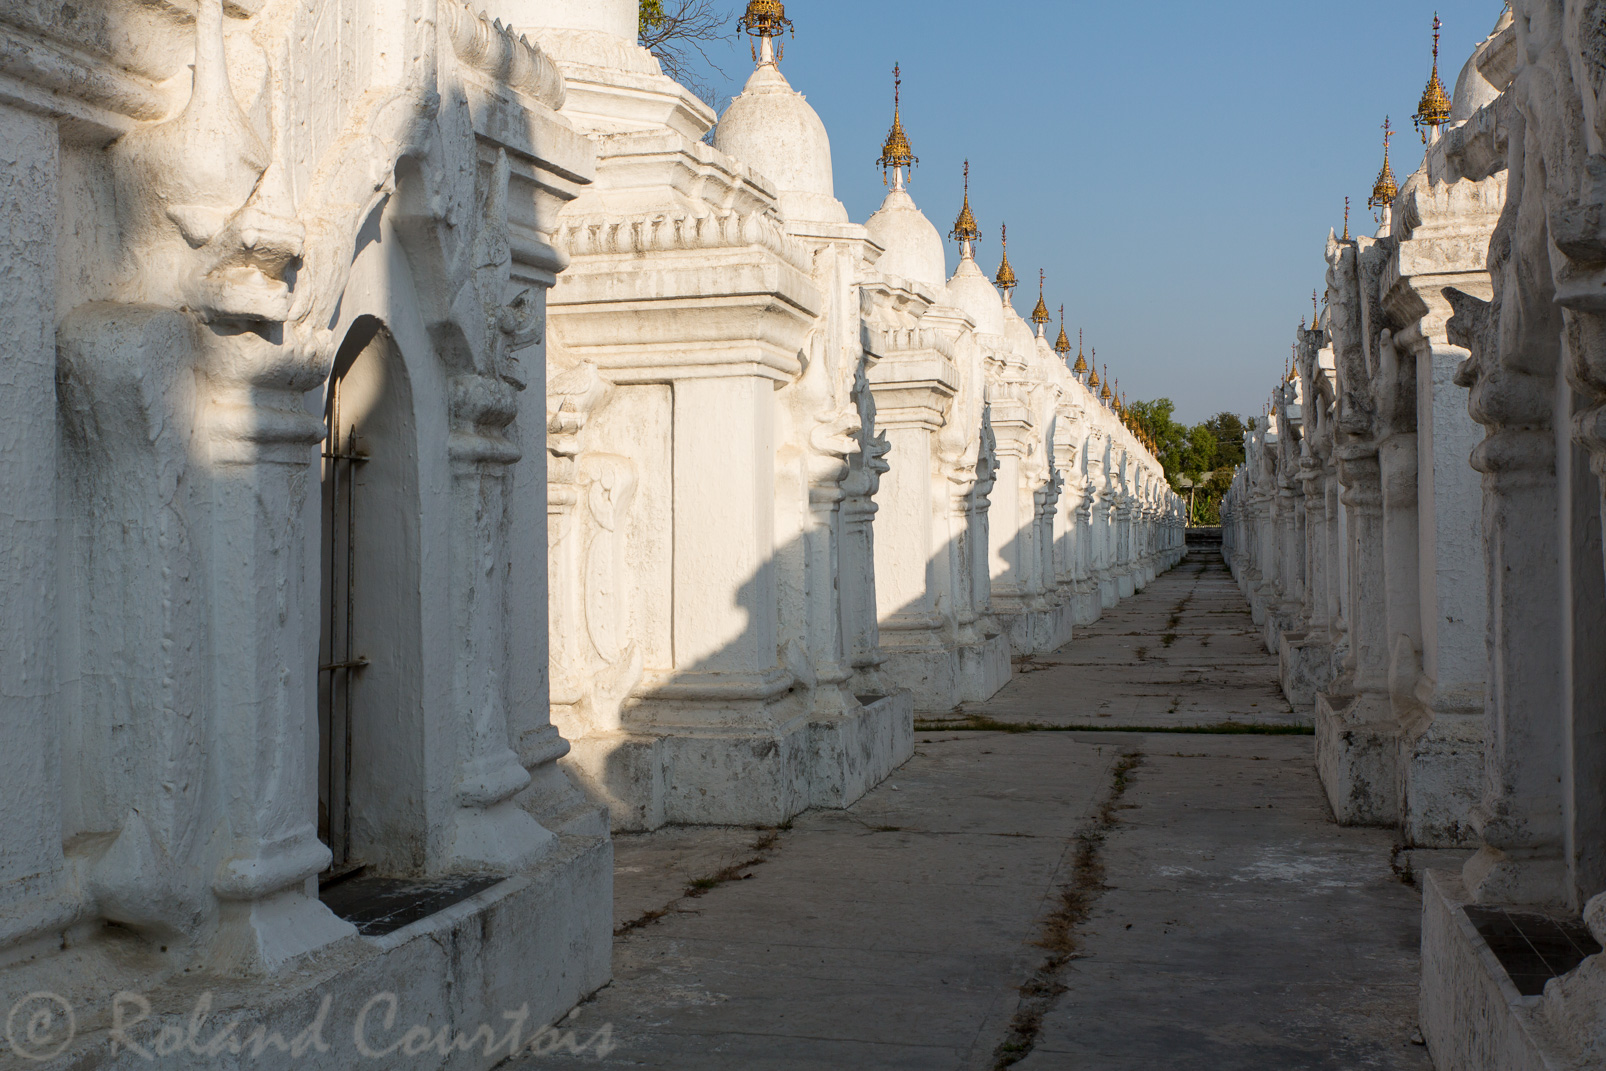 Autour de la pagode Kuthodaw une série de stupas abrite 729 stèles de marbre gravées en Pâli représentant l'intégralité du canon bouddhique